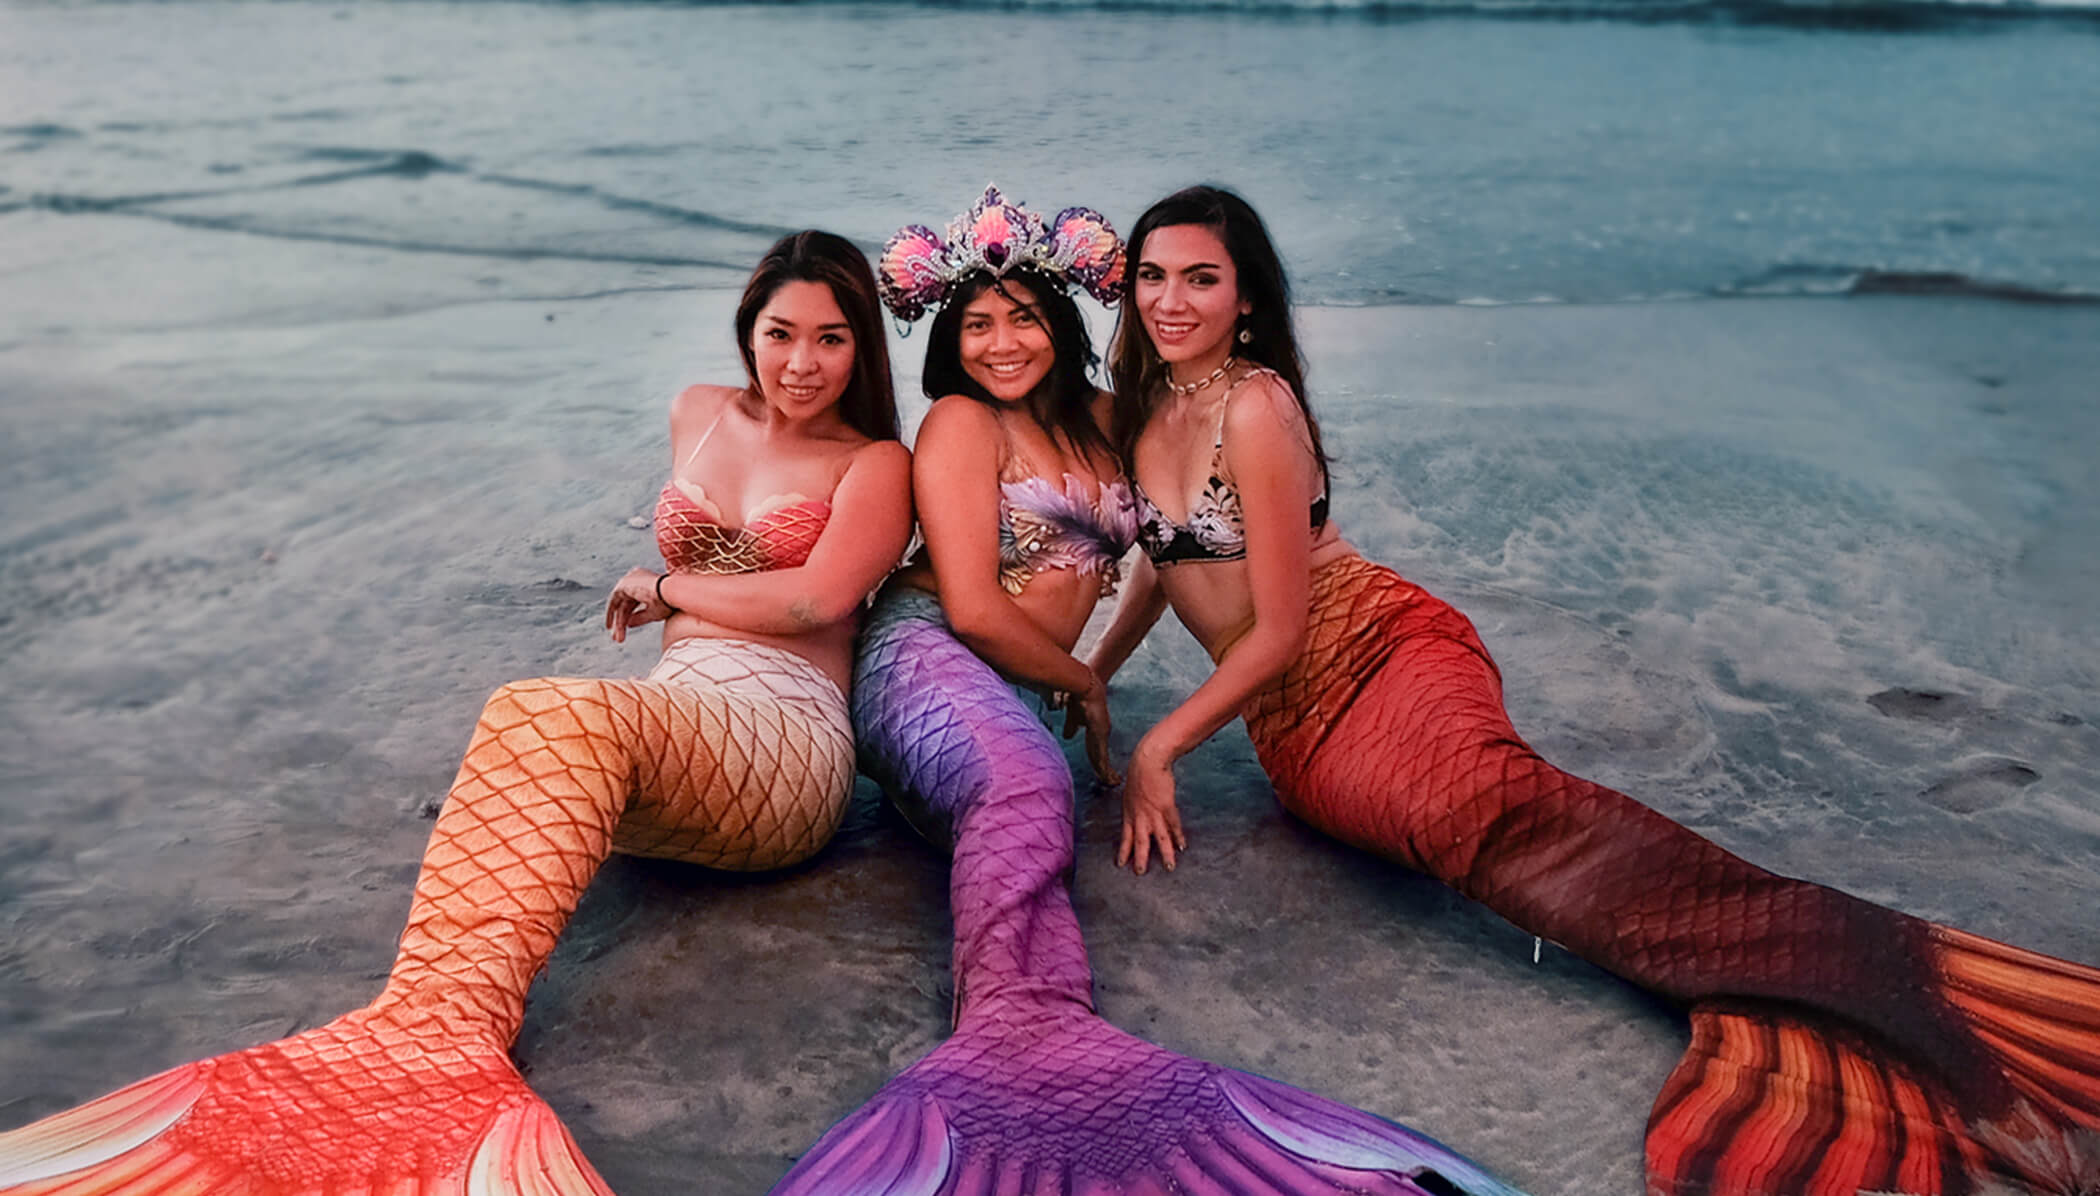 Ladies in mermaid costumes on the beach